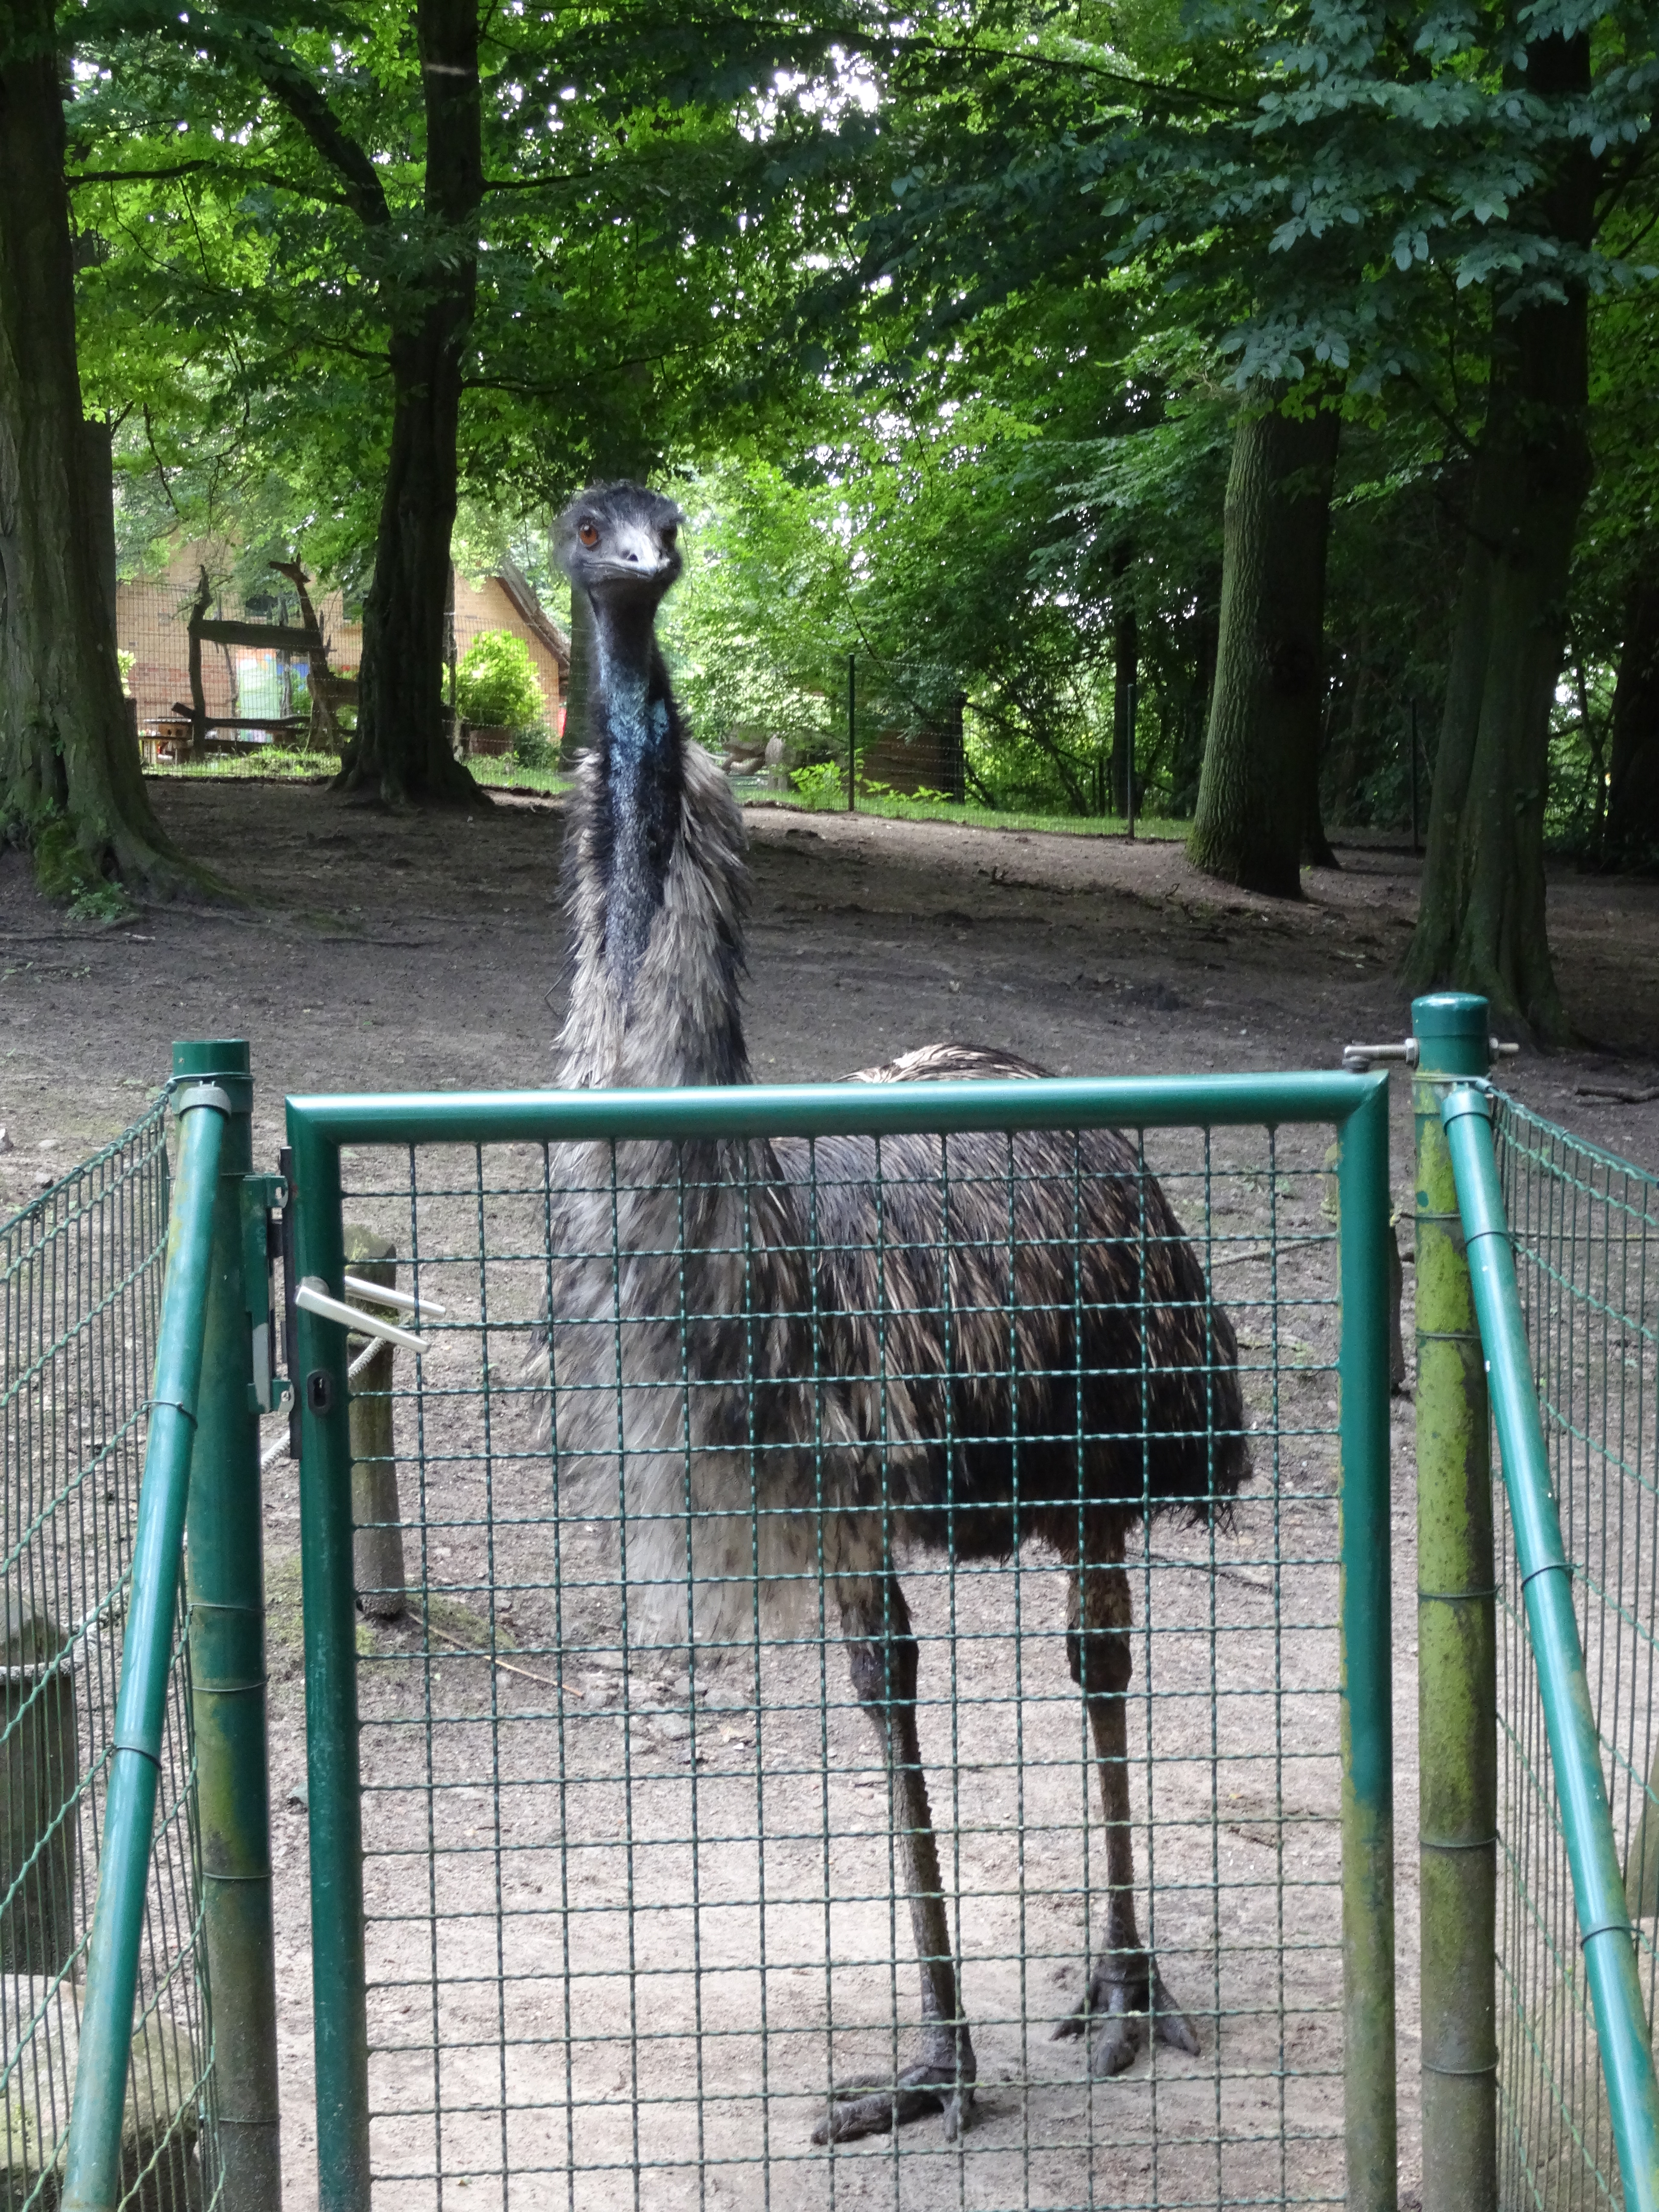 Bei Miss Emu - sie erwartet mich schon ...